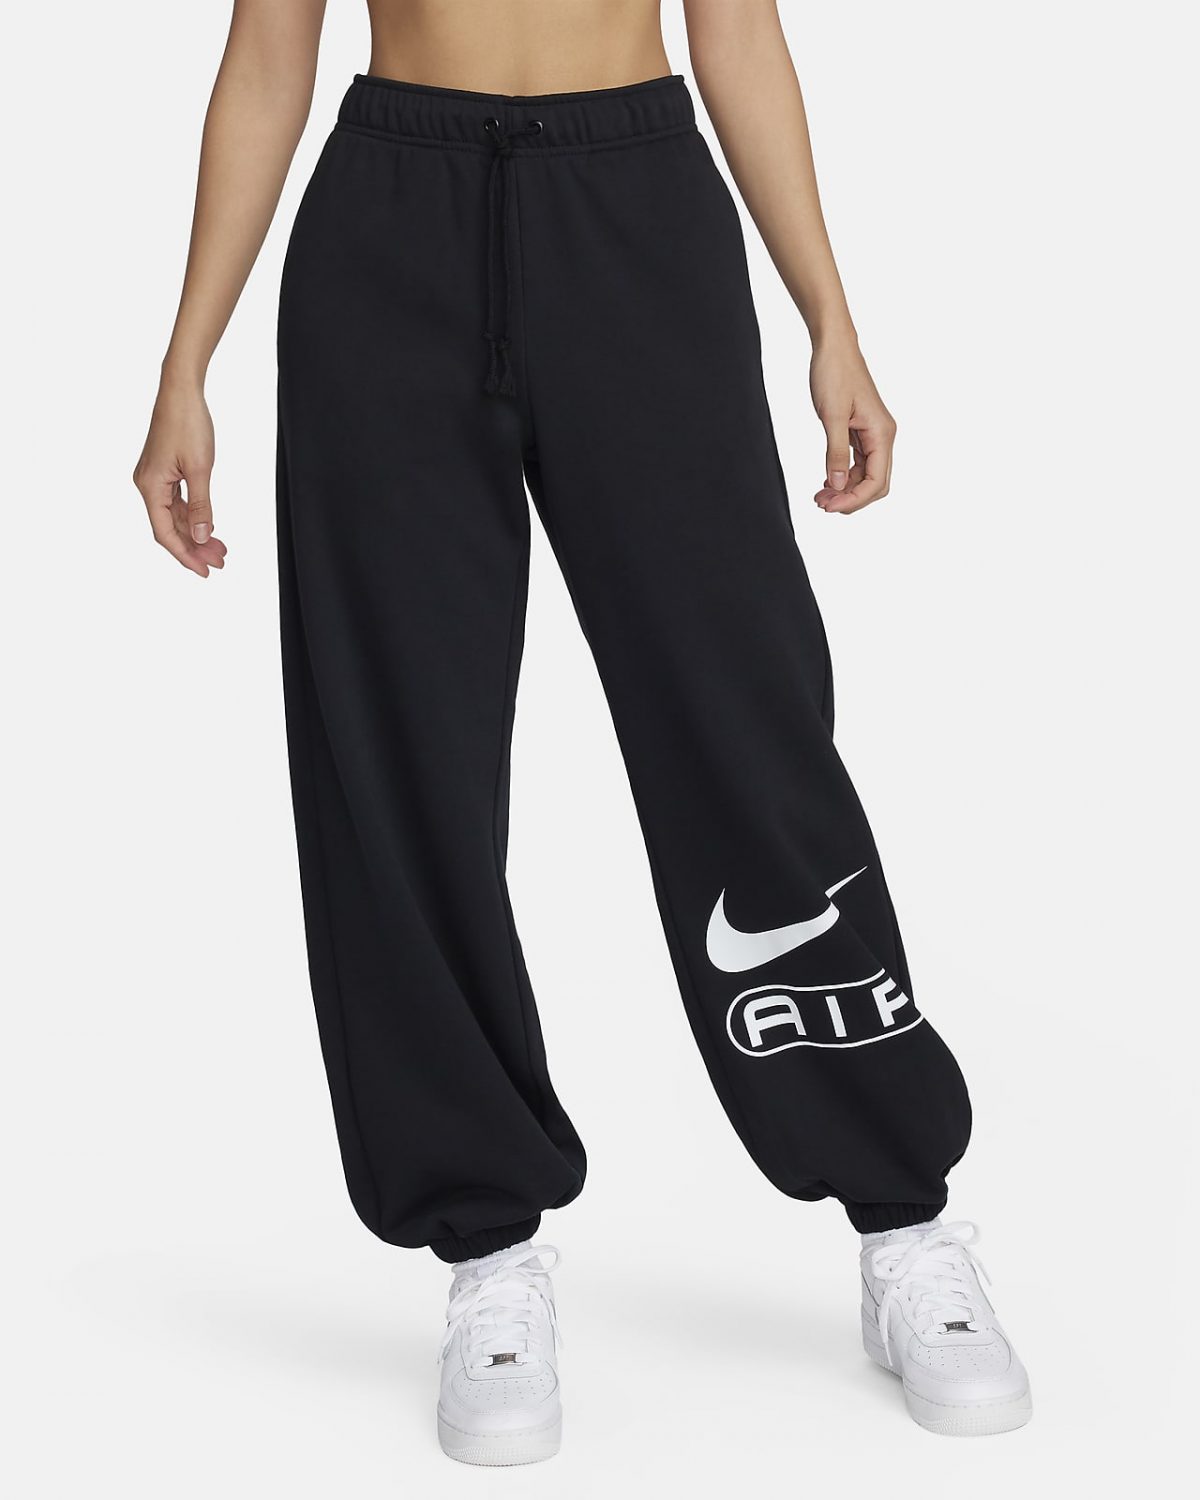 Женские брюки Nike Air черные фото